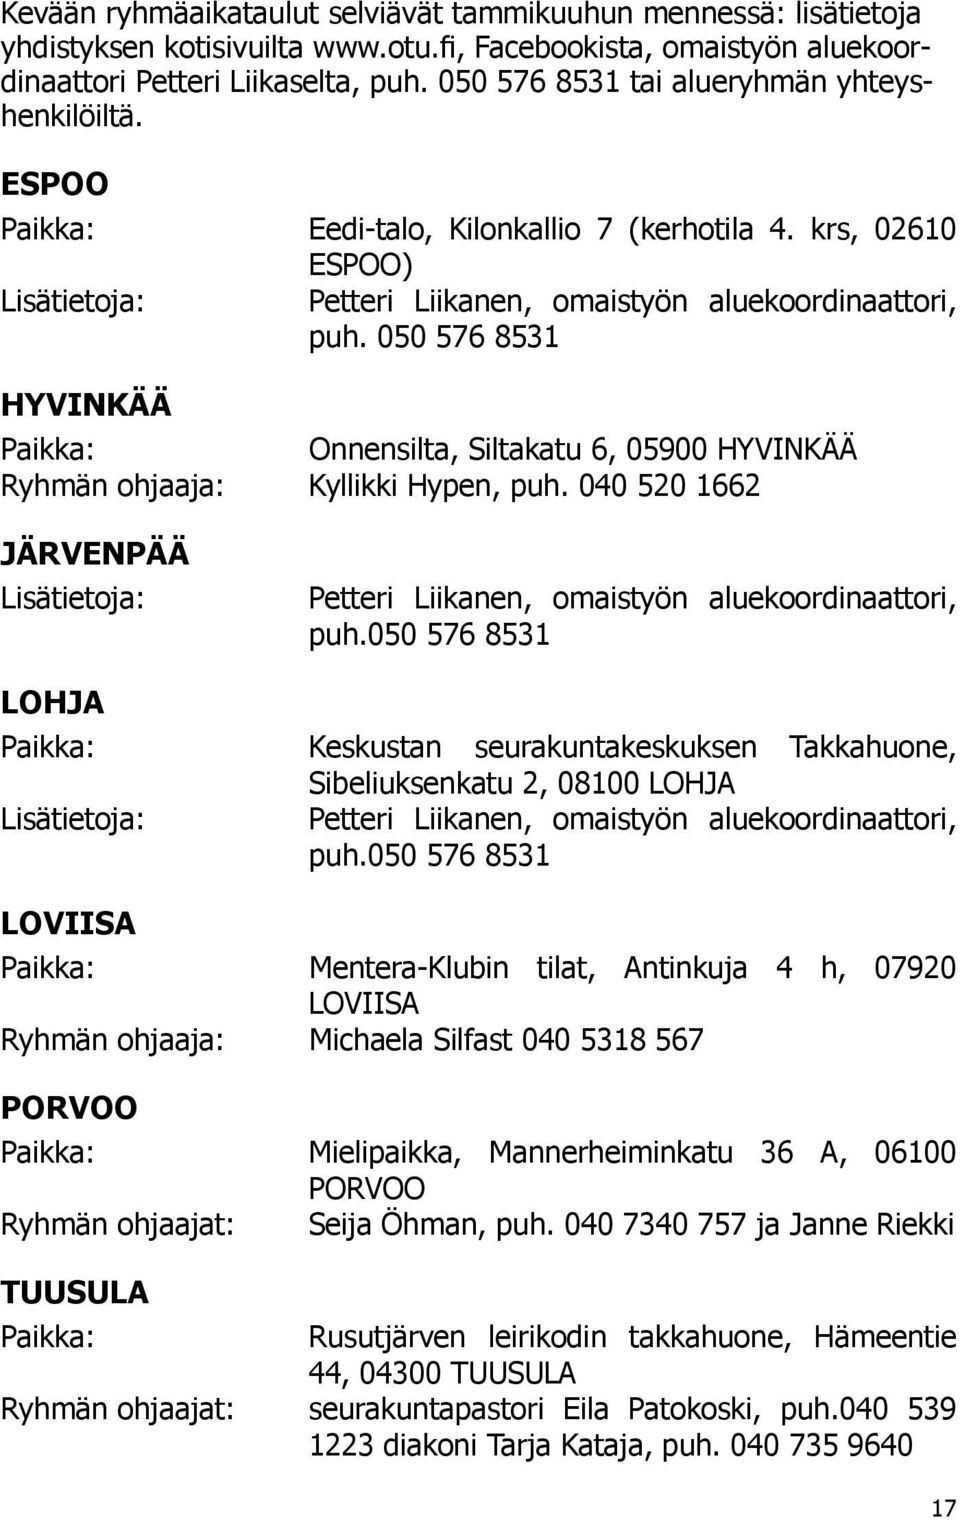 050 576 8531 HYVINKÄÄ Paikka: Onnensilta, Siltakatu 6, 05900 HYVINKÄÄ Ryhmän ohjaaja: Kyllikki Hypen, puh. 040 520 1662 JÄRVENPÄÄ Lisätietoja: Petteri Liikanen, omaistyön aluekoordinaattori, puh.